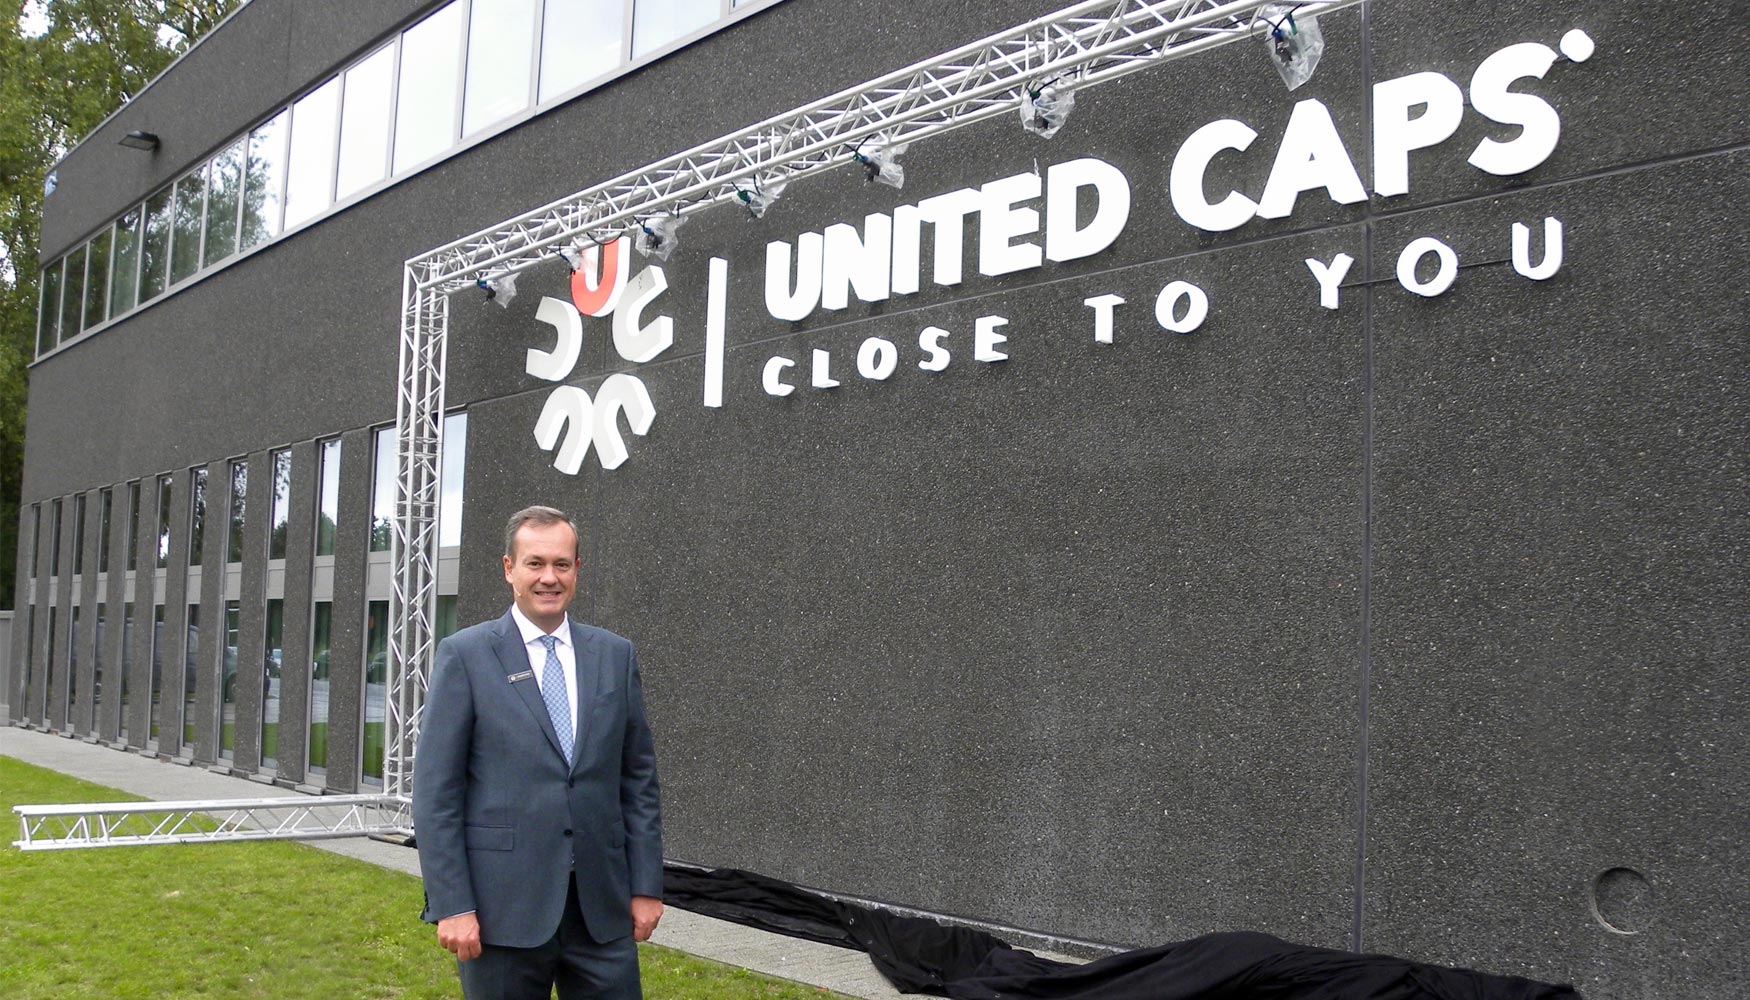 Benot Henckes, CEO de United Caps, tras retirar la lona que mostraba el nuevo nombre de Procap en la facha de sus instalaciones de Hoboken...